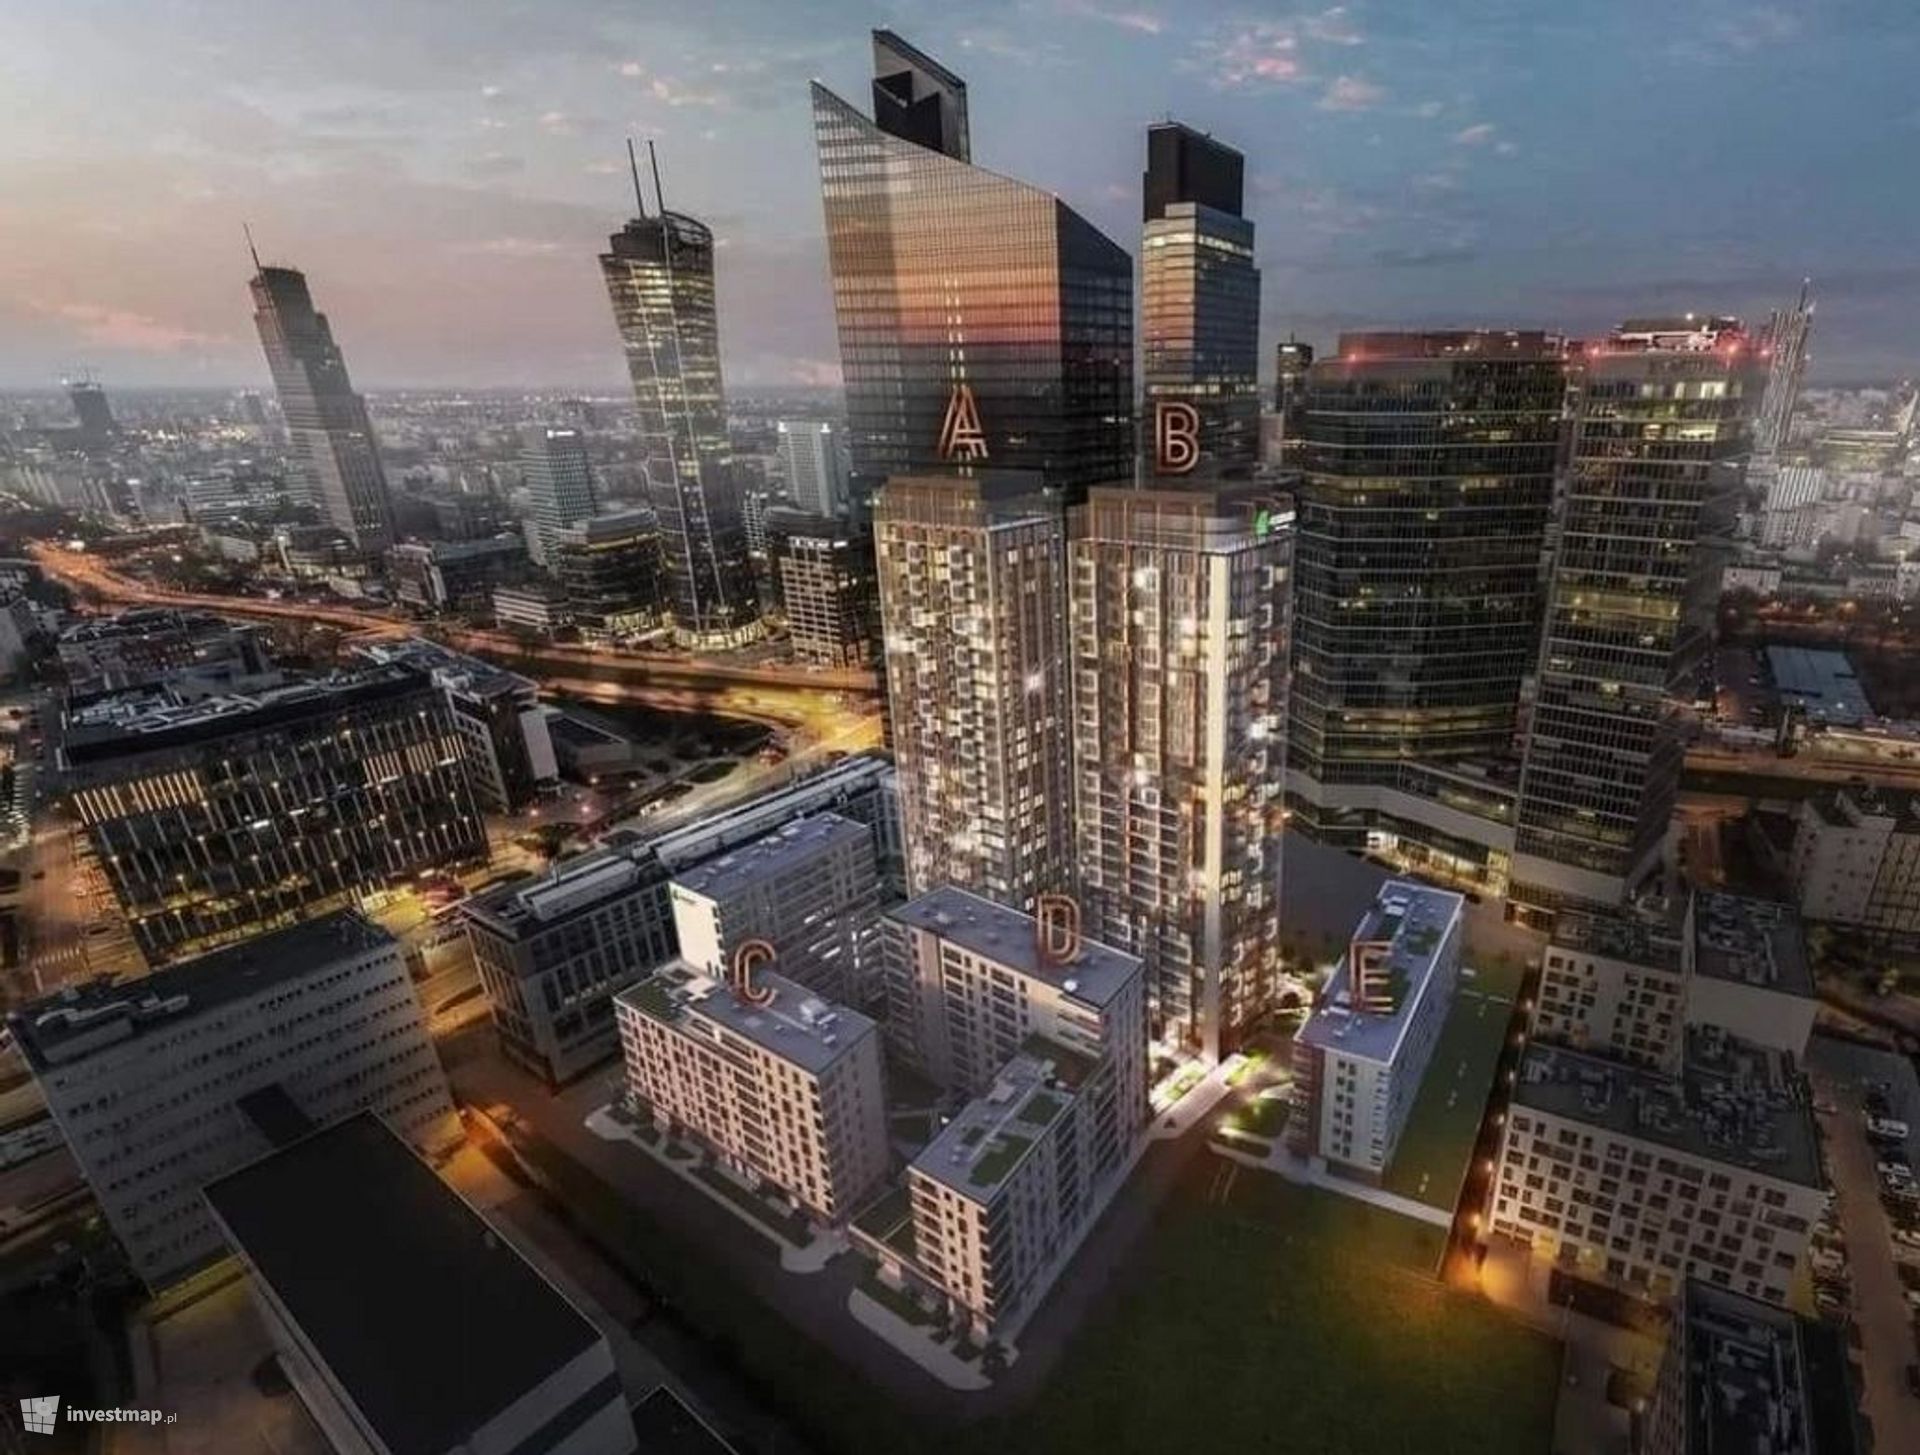 W centrum Warszawy powstają dwie 95-metrowe wieże Towarowa Towers 